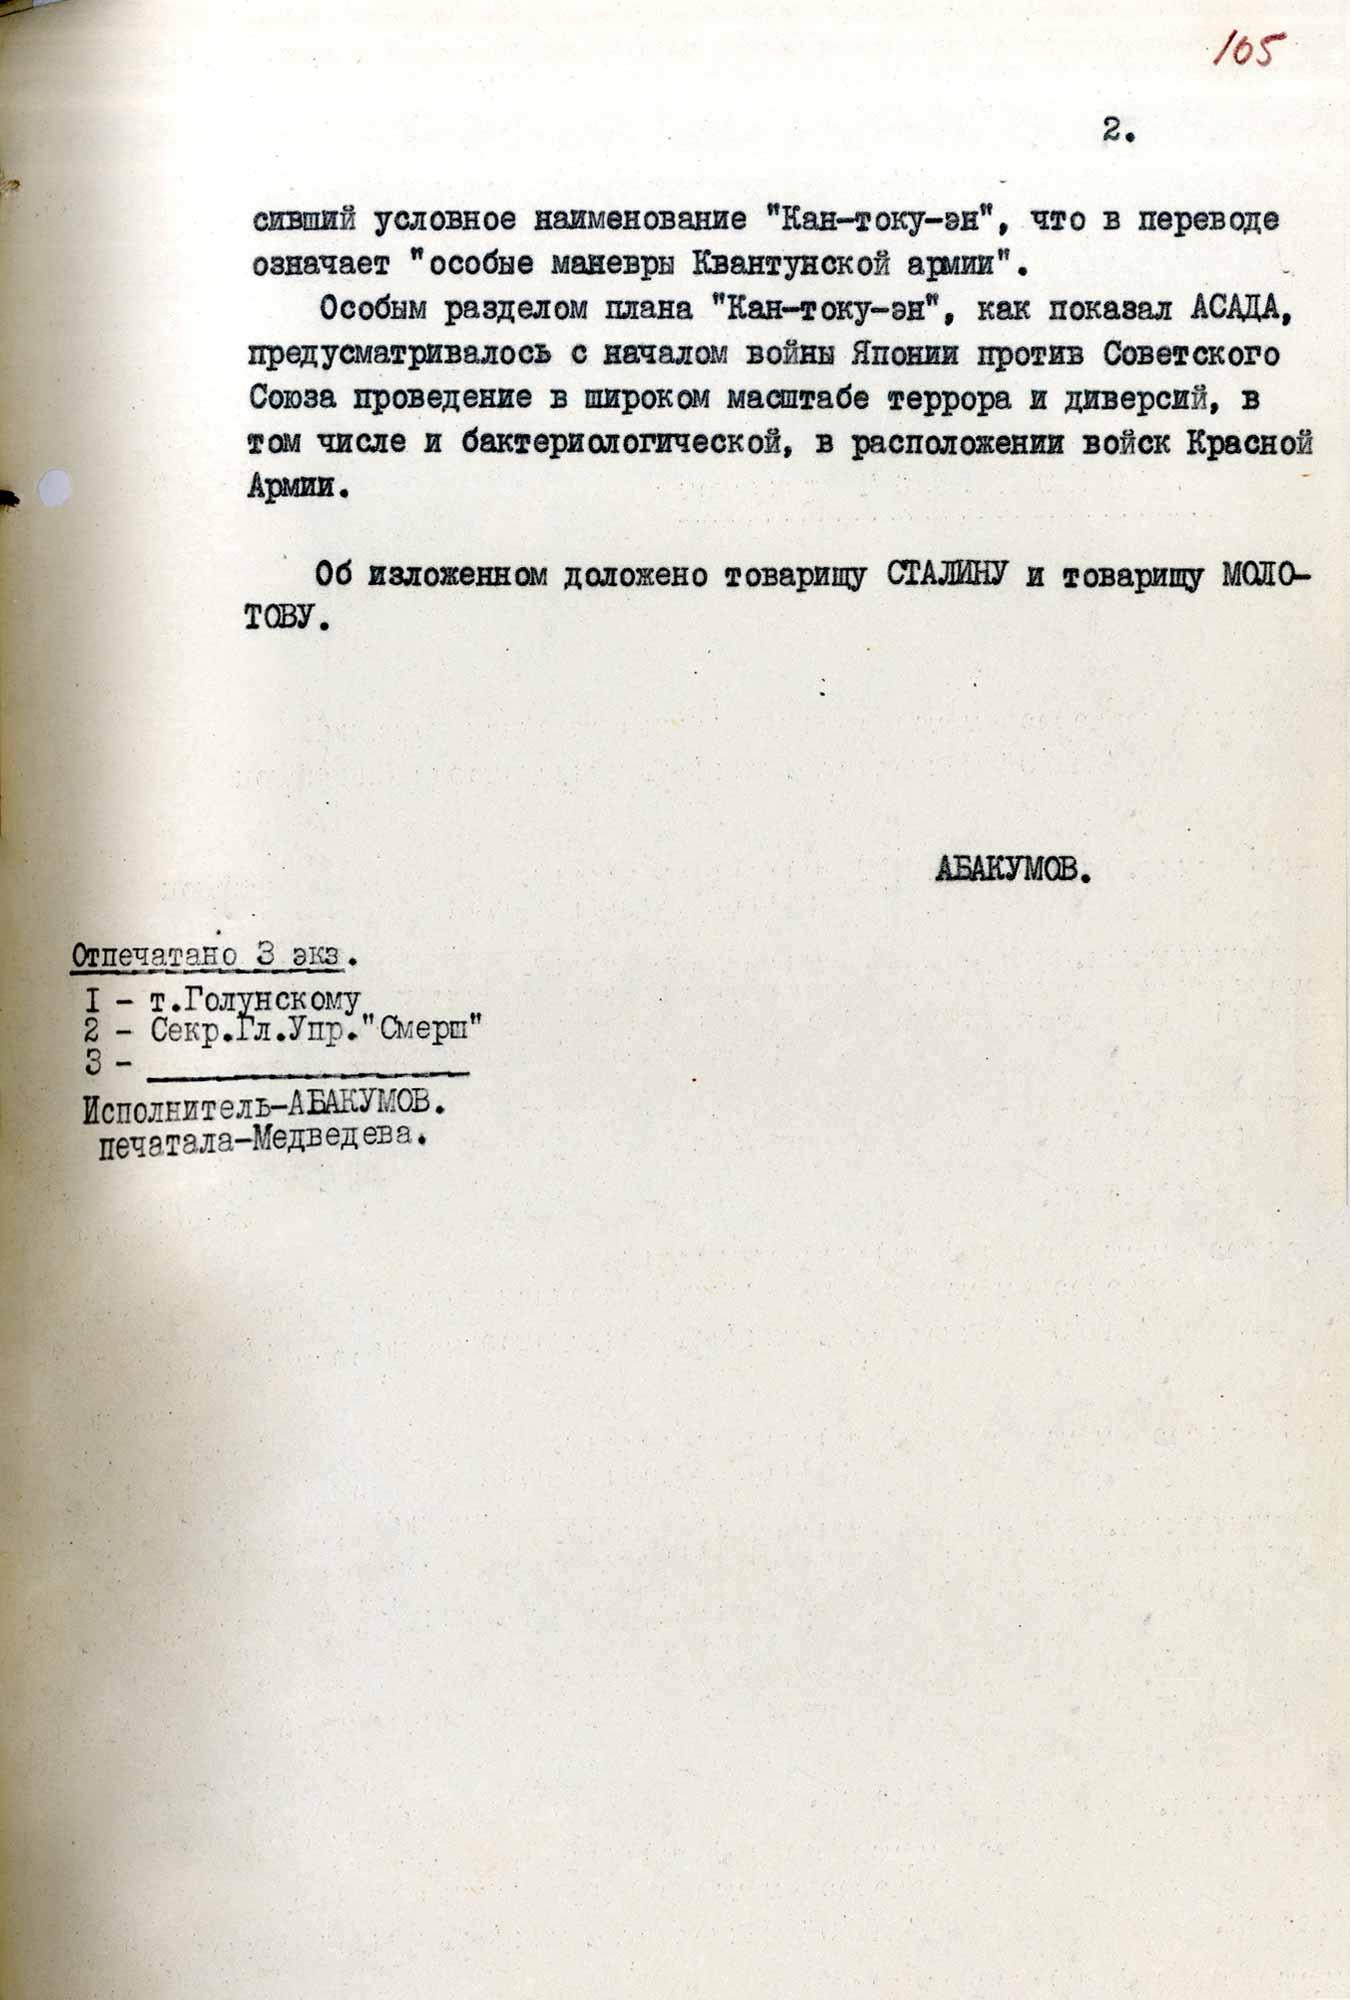 ФСБ раскрыла документы о подготовке Японией нападения на СССР